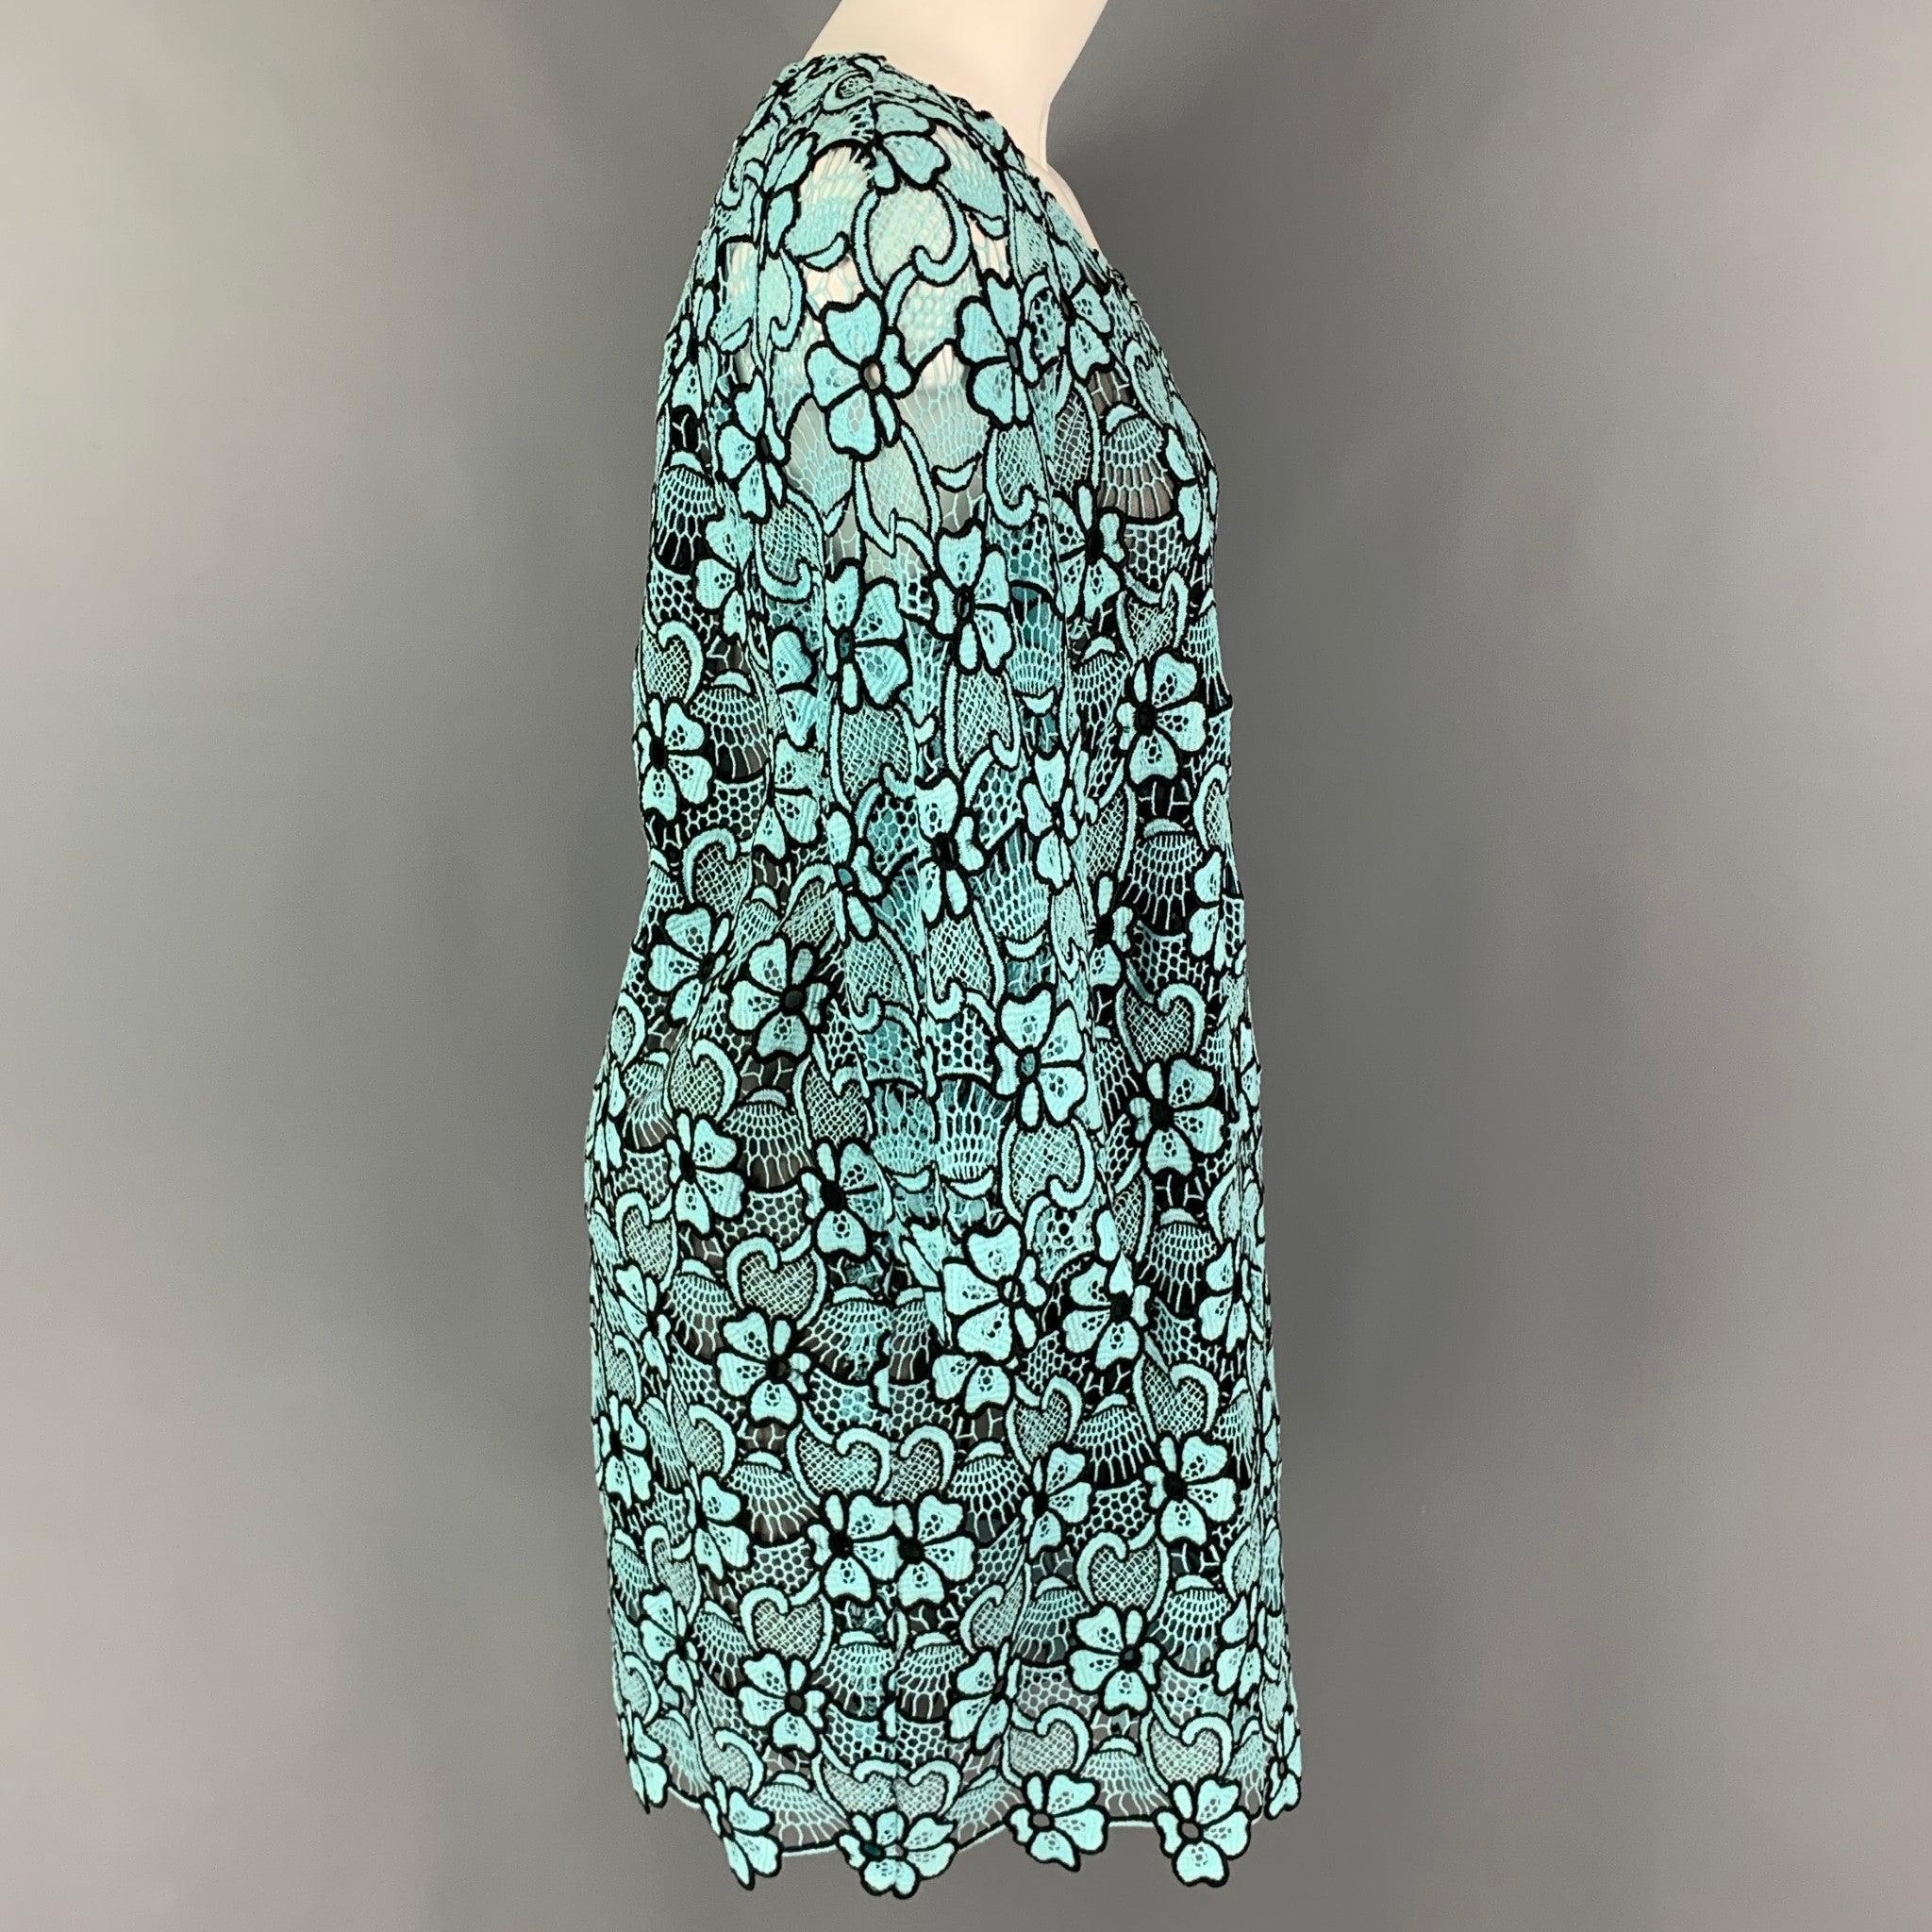 EMANUEL UNGARO Kleid aus geblümter Baumwolle/Polyester mit blauen und schwarzen Ösen, Shift-Stil, 3/4 Ärmeln und Reißverschluss hinten.
Ausgezeichnet
Gebrauchtes Zustand. 

Markiert:   I 44 / D 40 / F 40 / GB 12 / USA 10 

Abmessungen: 
